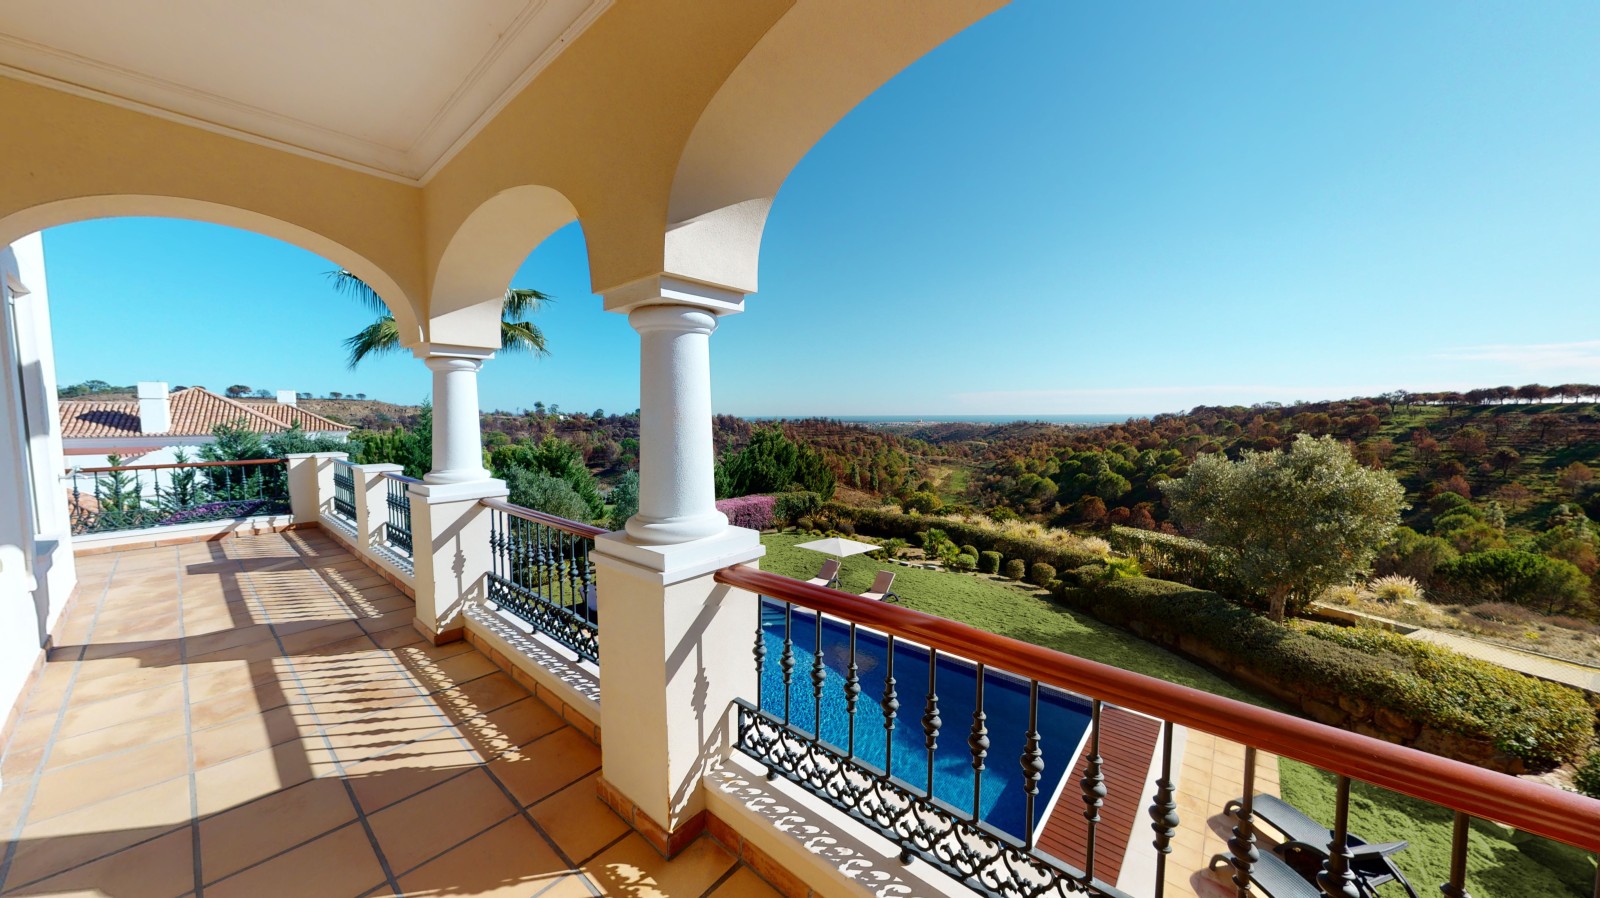 Moradia V4 com piscina, para venda em Vila Real de Santo Antonio, Algarve_215729